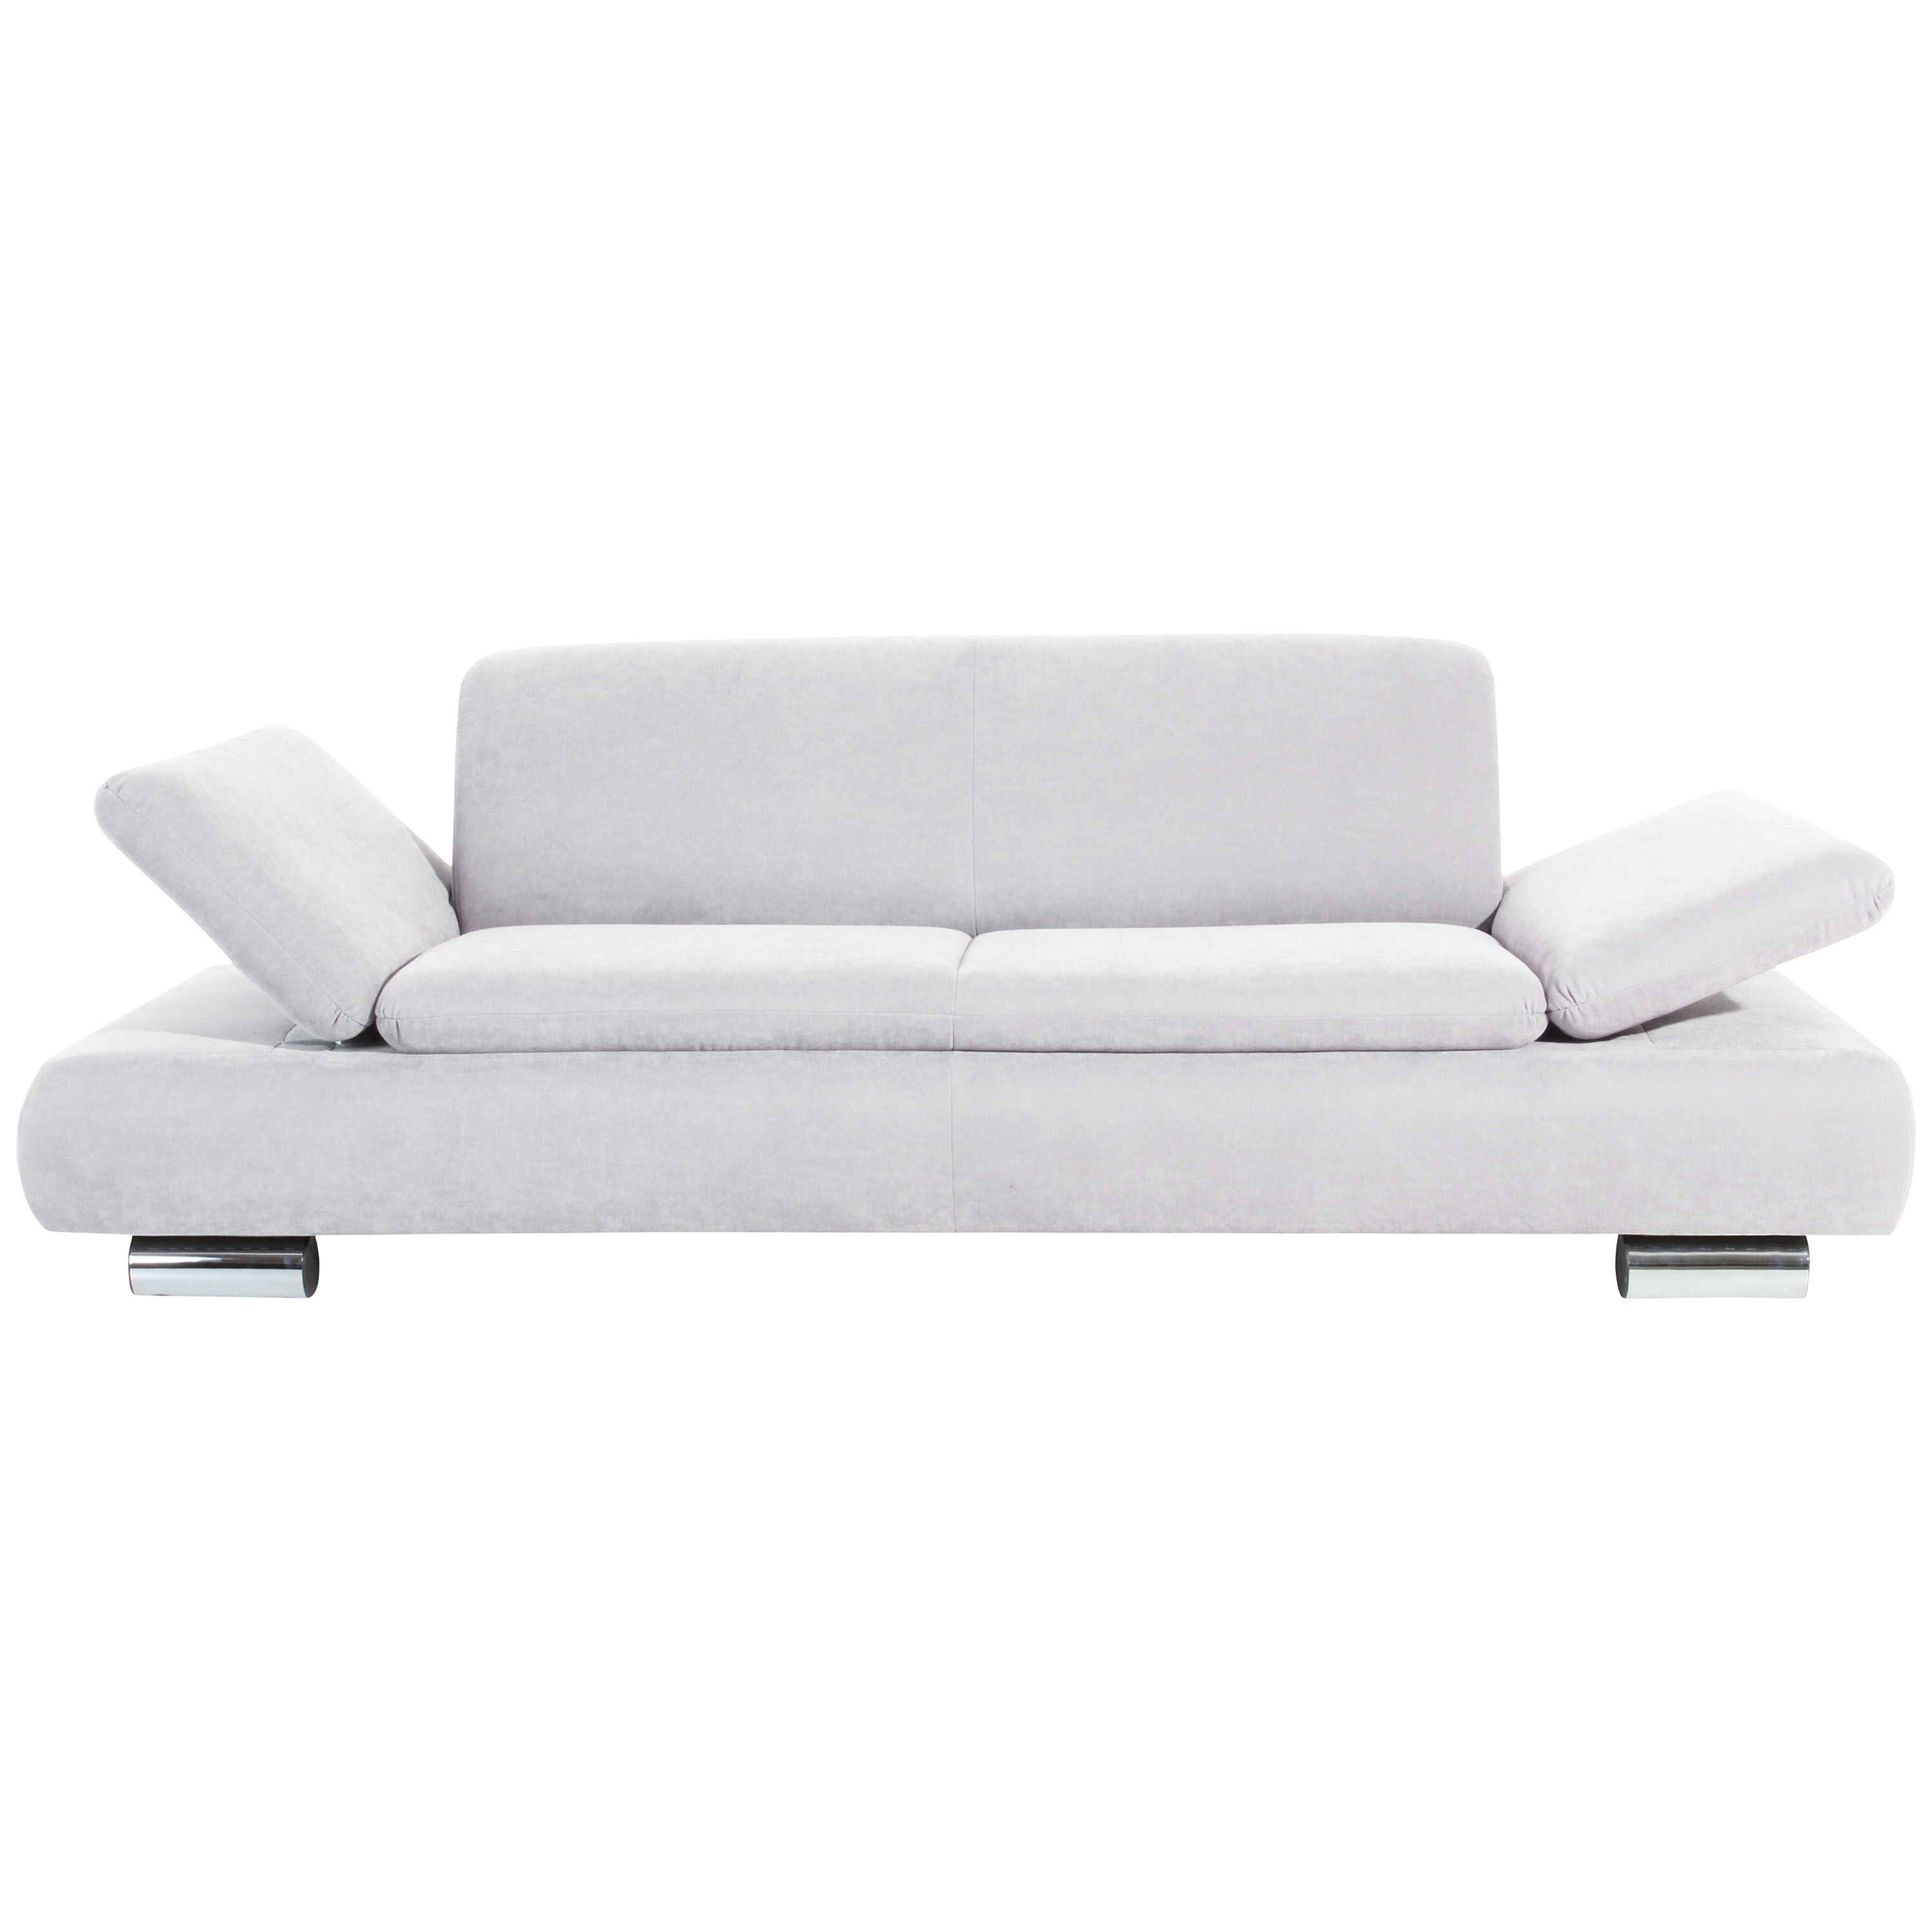 gemütliches 2,5-sitzer sofa mit hochgeklappten armlehnen im creme farbton und verchromten metallfüssen